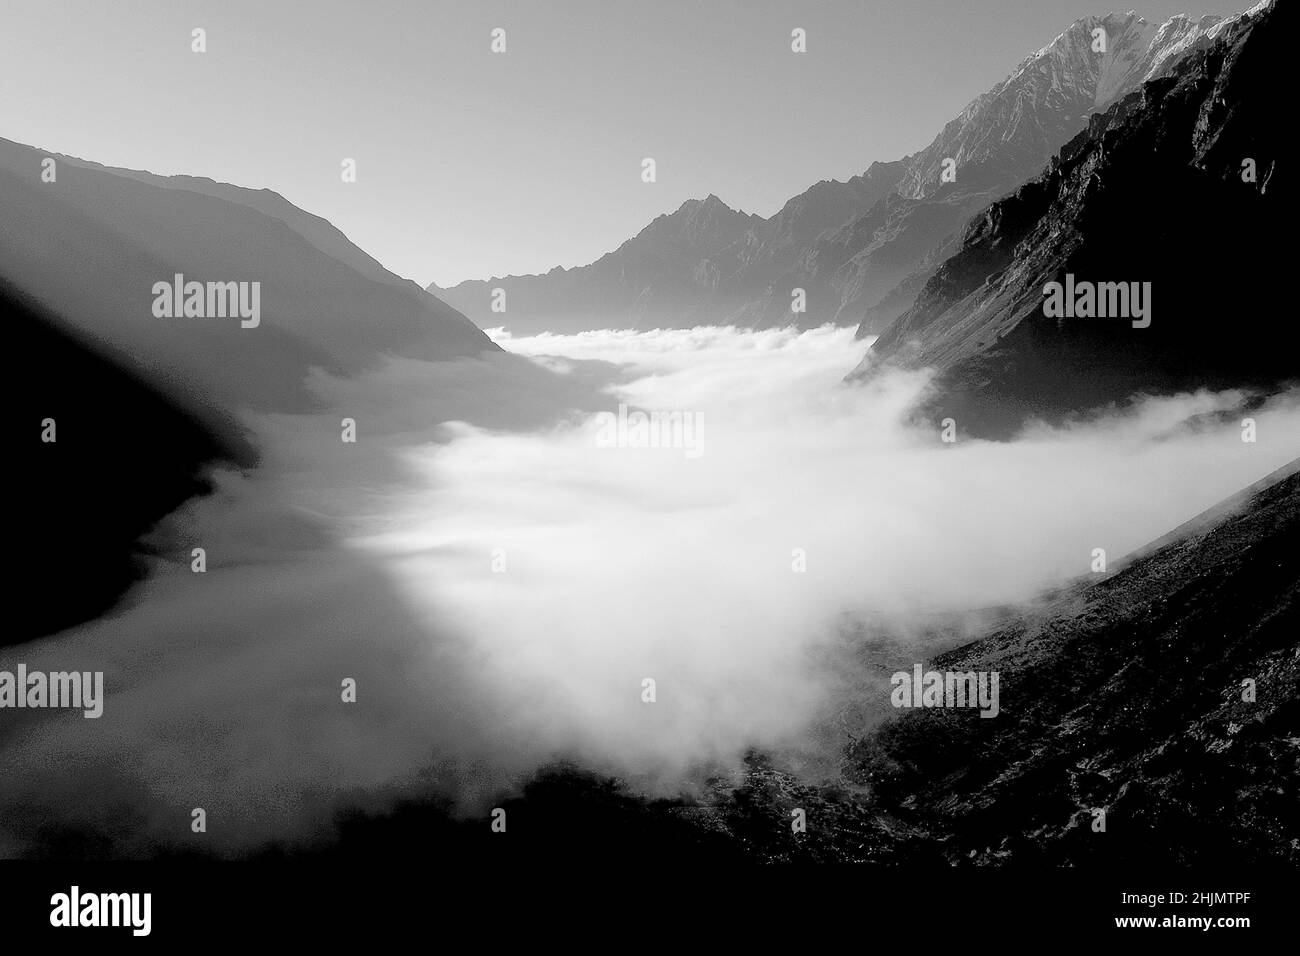 Photographie en noir et blanc d'une vallée de montagne, nuages de tempête et lumière du soleil, vallée de Langtang, Langtang, Himalaya, Népal, Asie, 2016. Banque D'Images